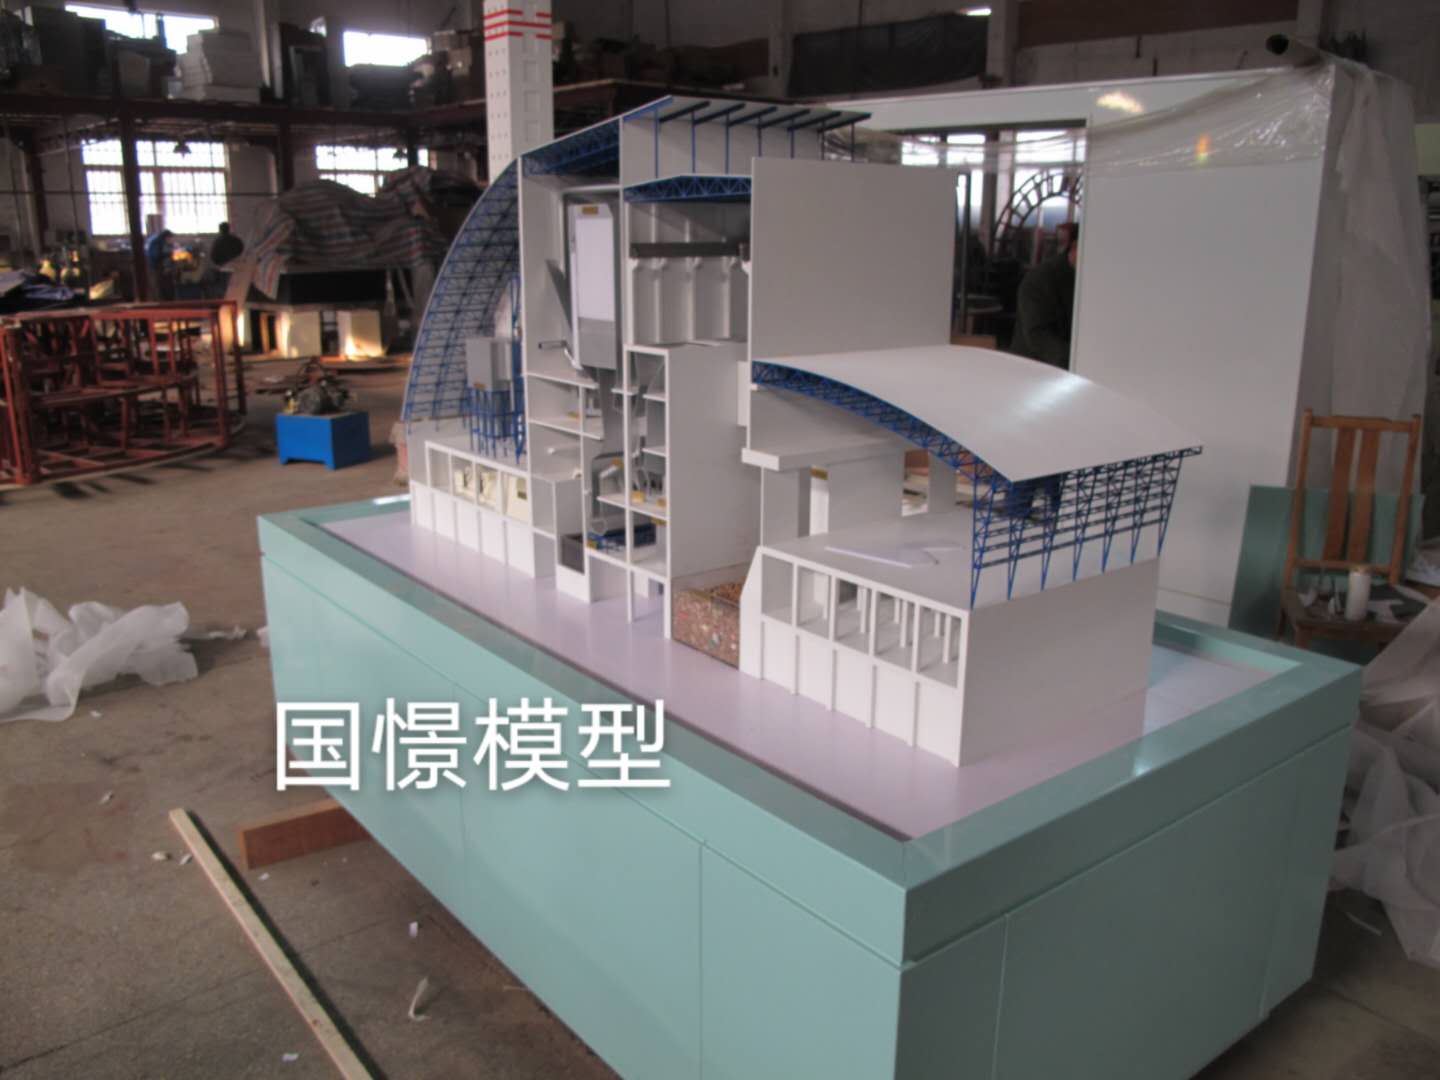 虞城县工业模型